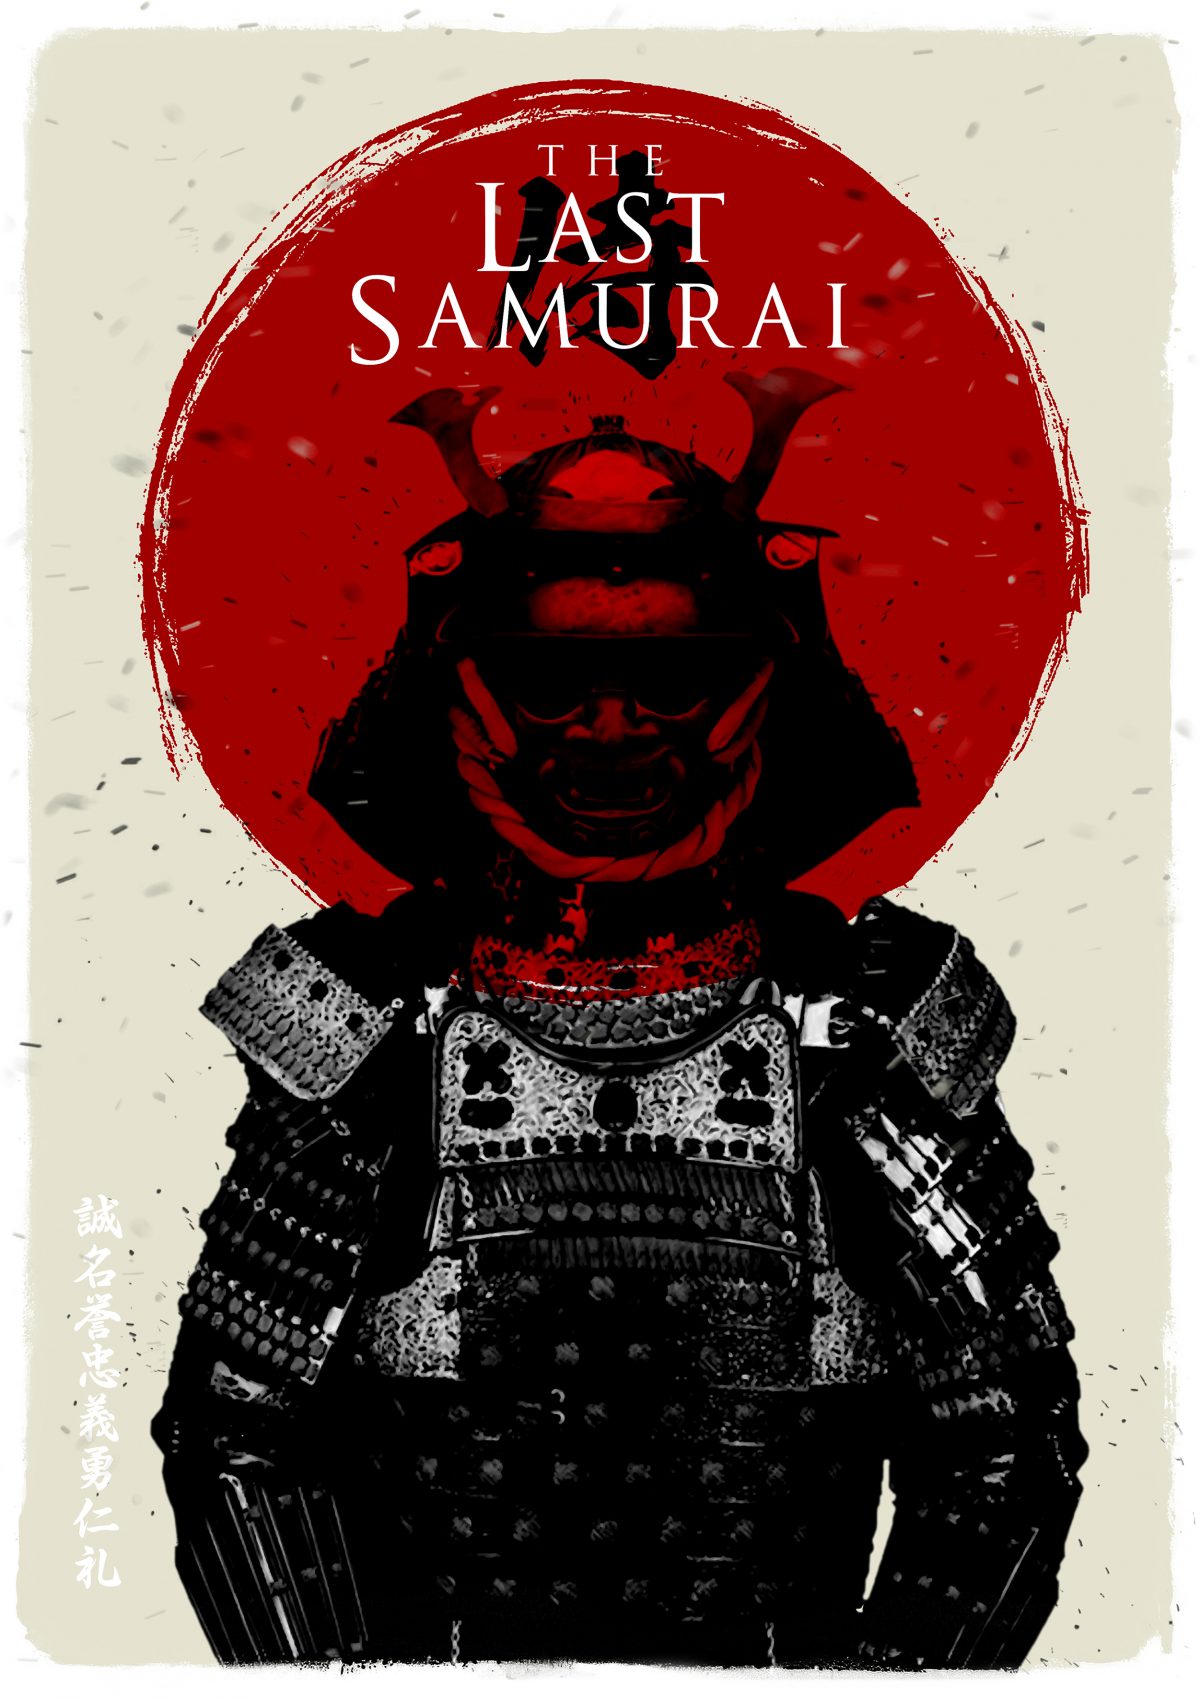 The last Samurai poster